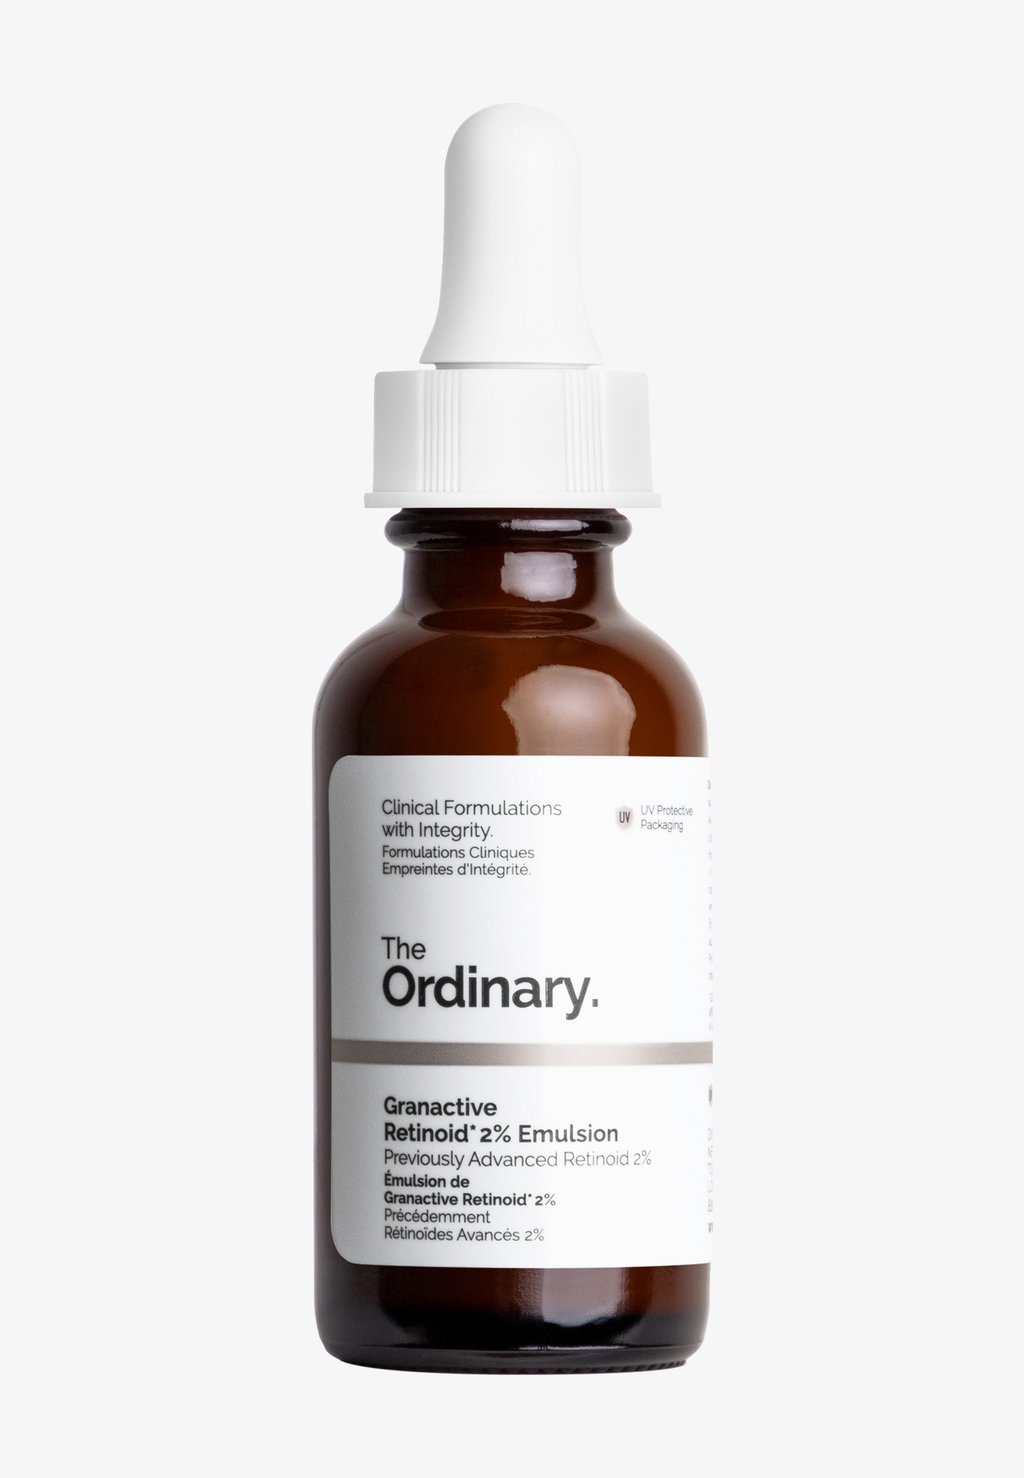 Сыворотка Granactive Retinoid 2% Emulsion The Ordinary the ordinary emulsion granactive retinoid 2% 1 fl oz 30 ml